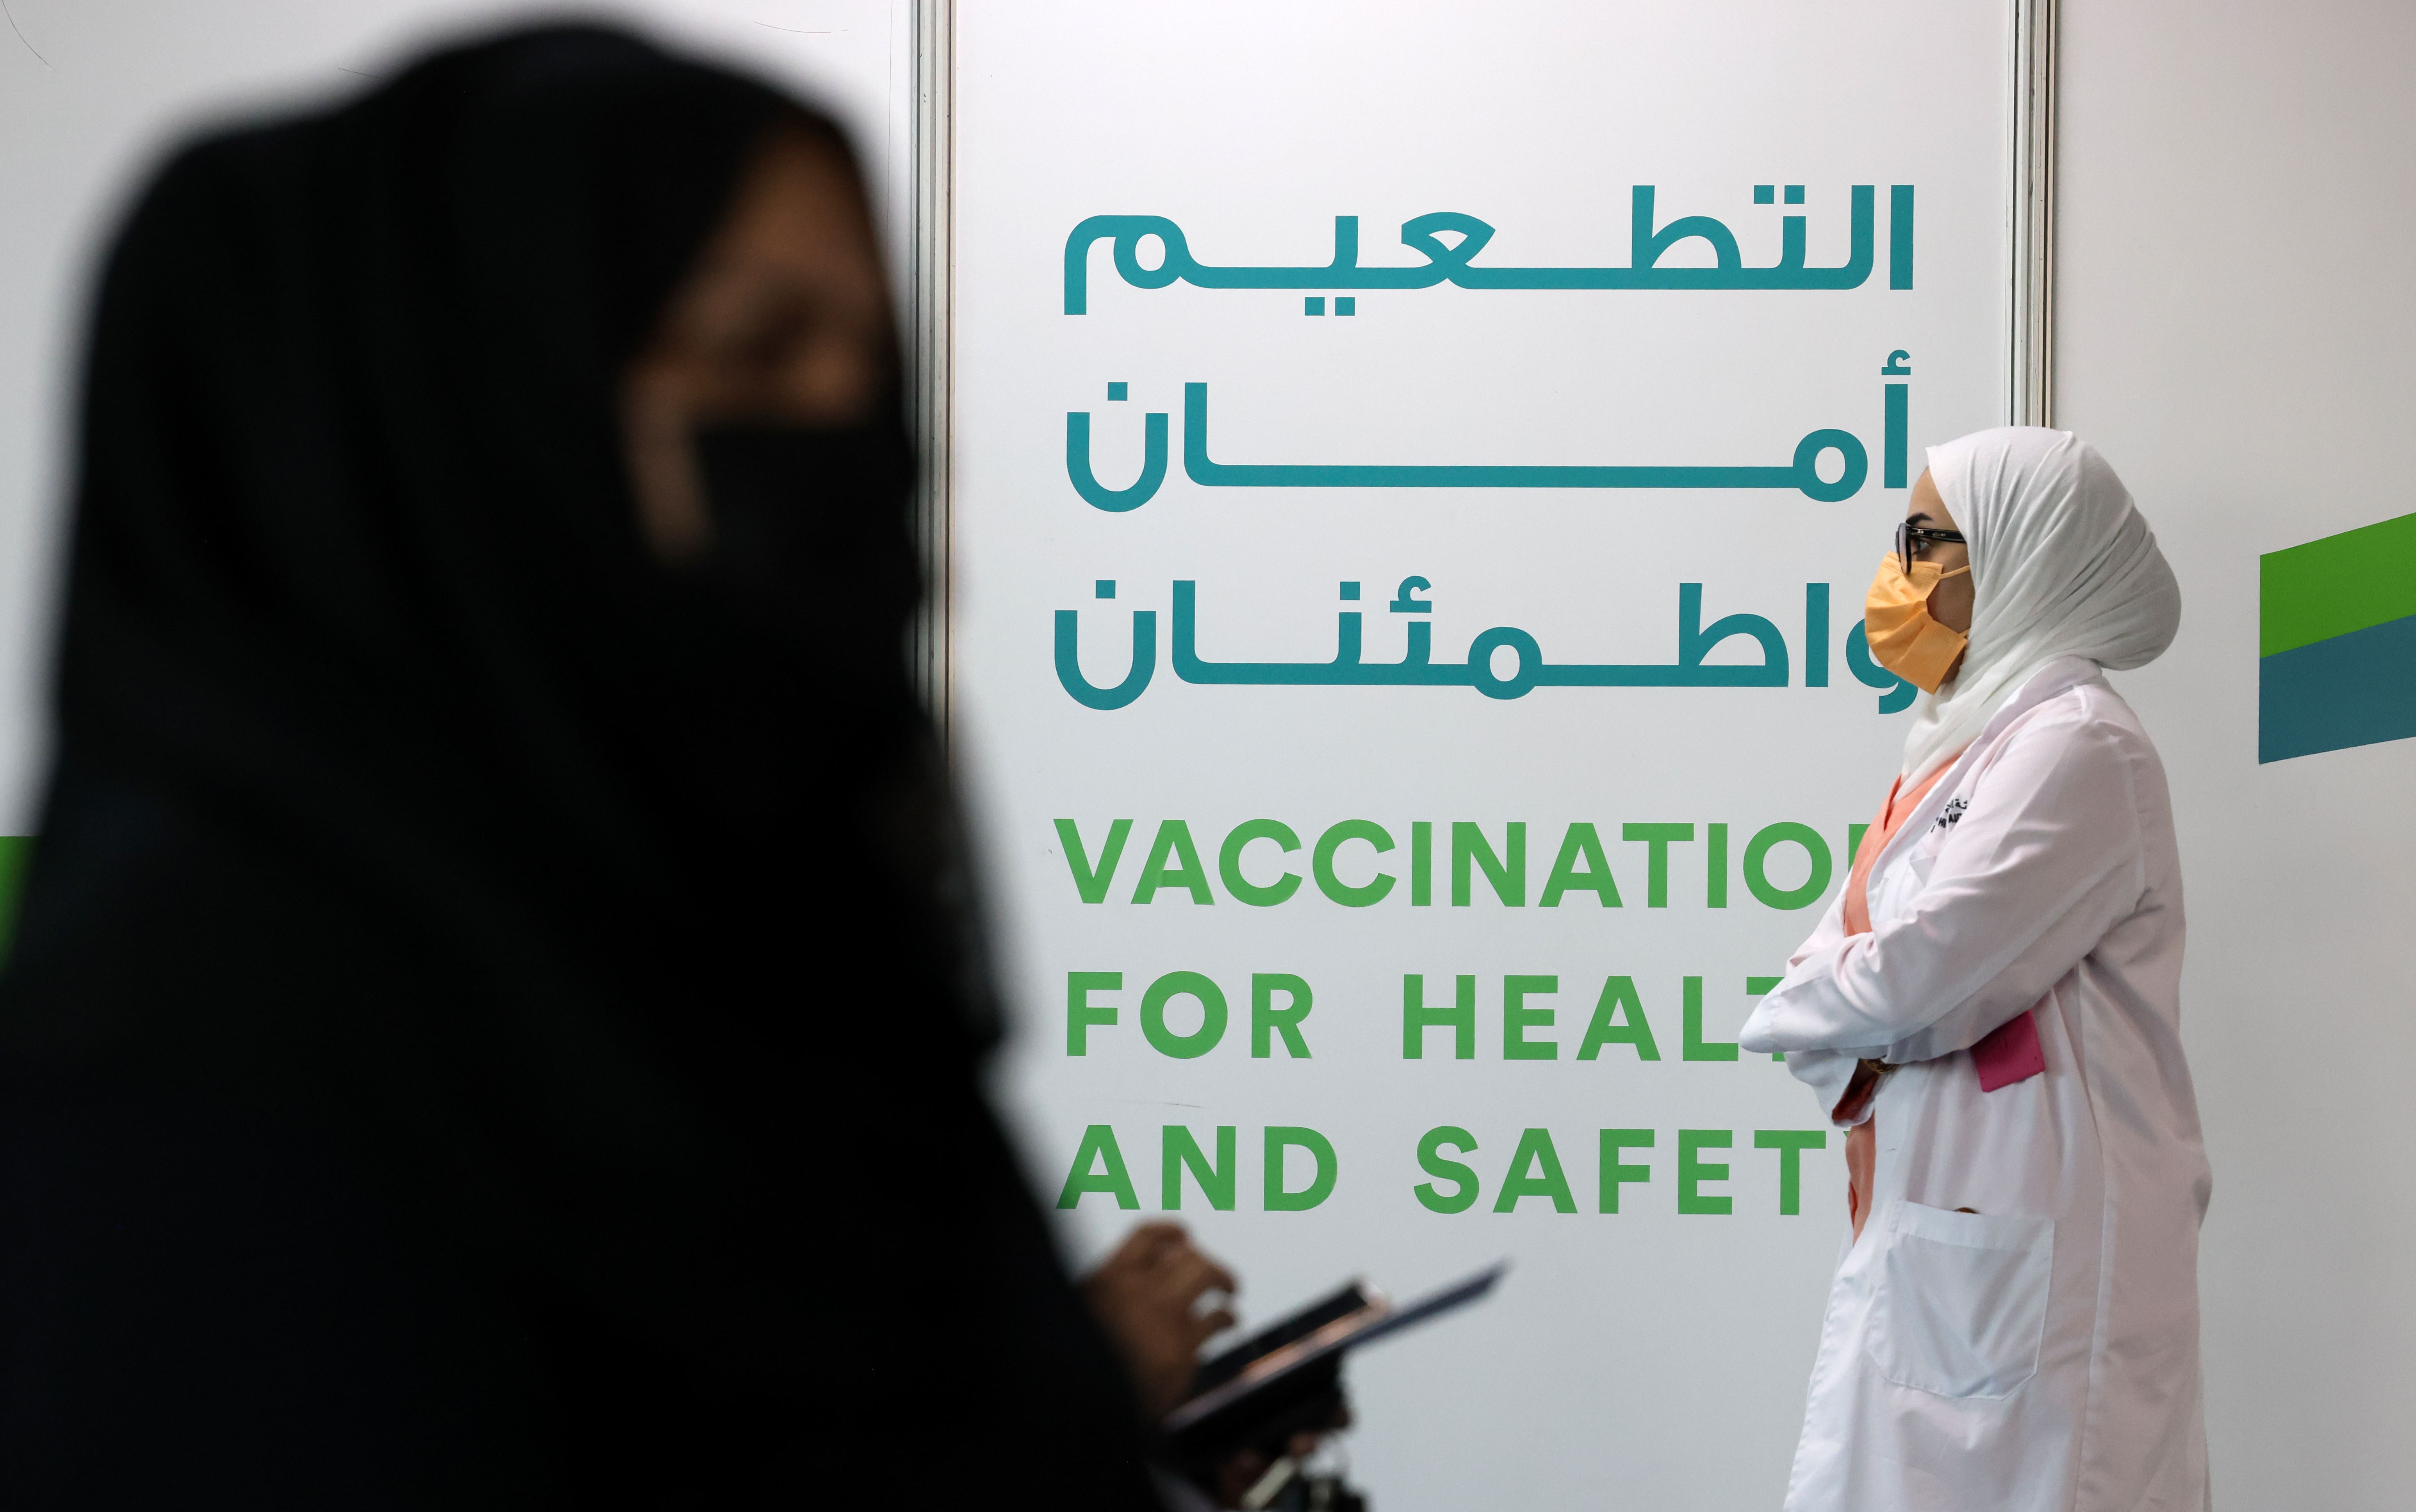 الإمارات: 100% من السكان تلقوا الجرعة الأولى من لقاح كوفيد-19